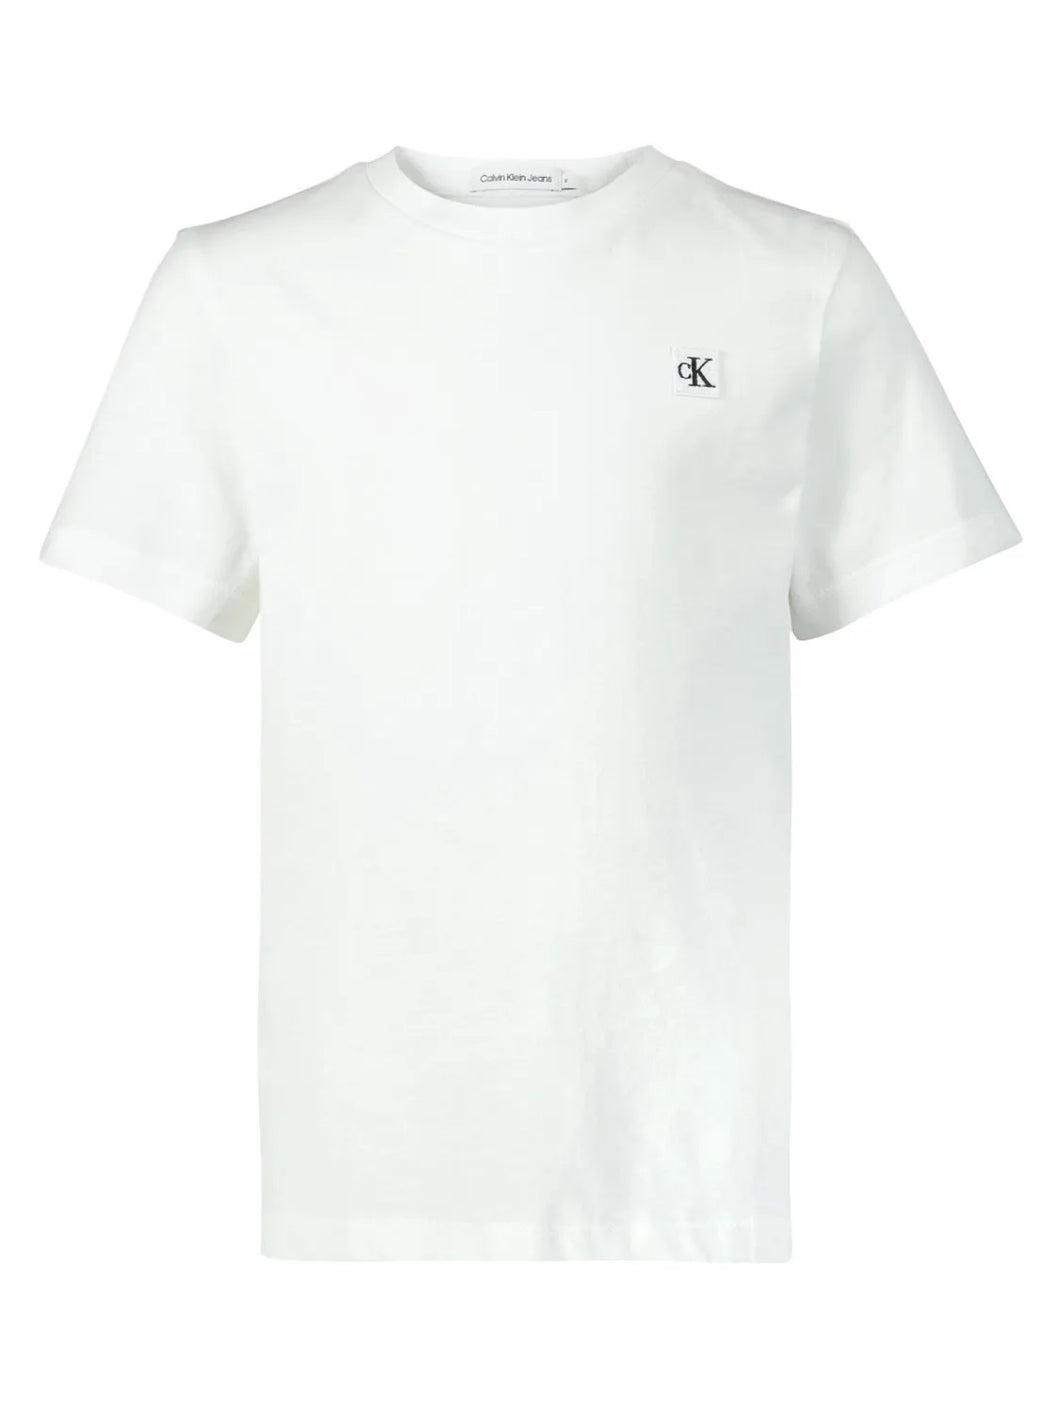 CALVIN KLEIN JEANS T-shirt bianca con monogramma